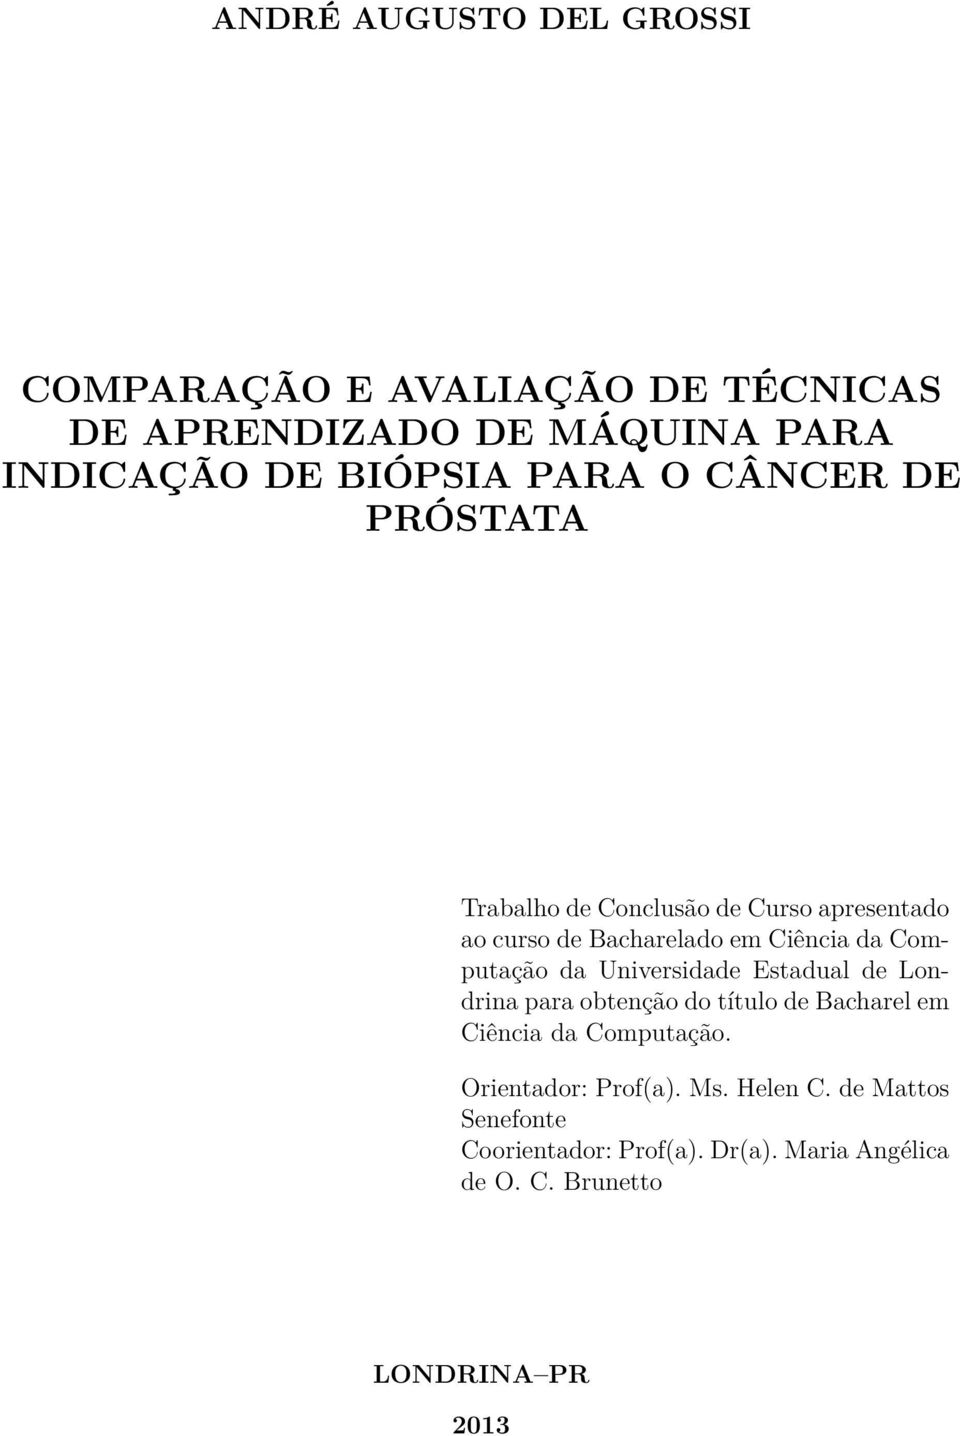 Computação da Universidade Estadual de Londrina para obtenção do título de Bacharel em Ciência da Computação.